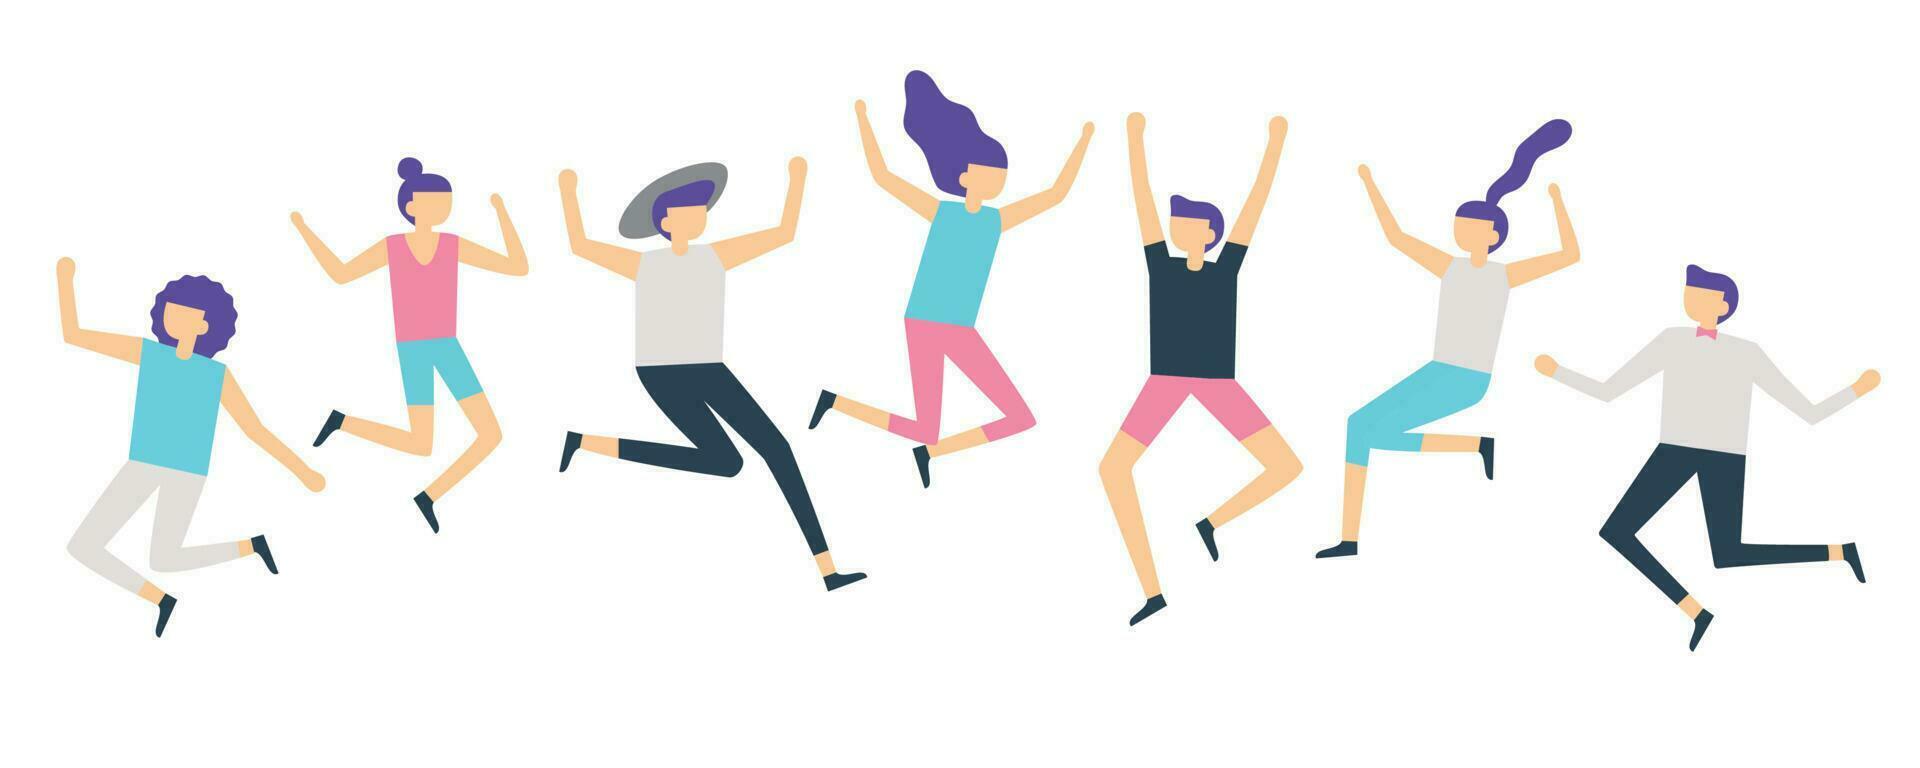 jumping mensen. actief volwassenen vrienden groep springen. gelukkig vrouw en mannetje tekens gesprongen en lach vector illustratie